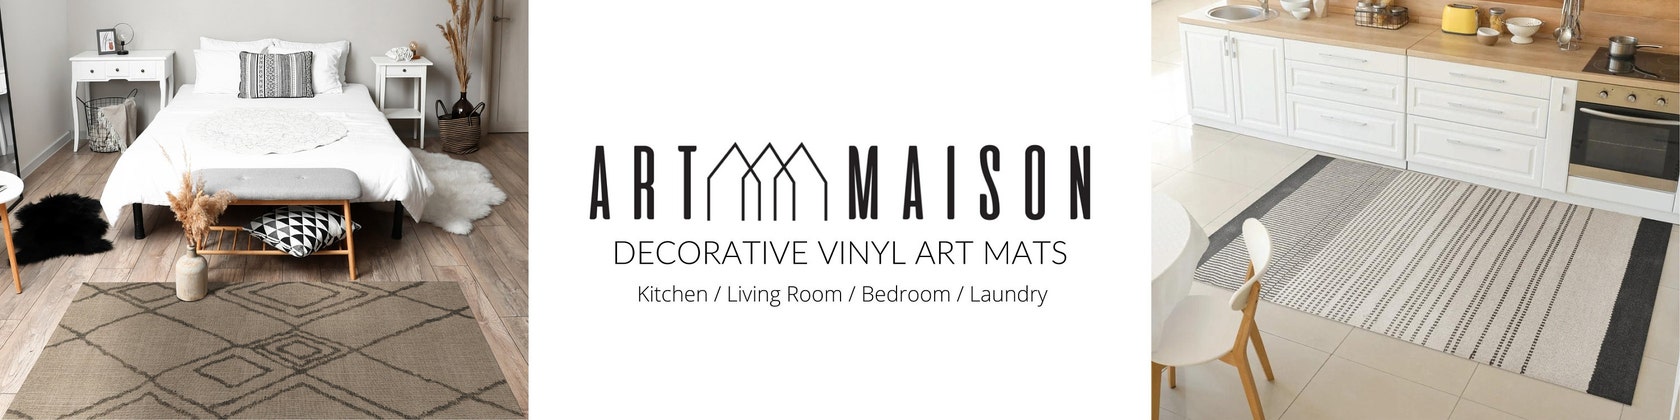 ArtMaison Canada 18 in. x 42 in. Non Slip Designer Kitchen Art Mat Long  Vinyl Rug Decorative Floor Mat Runner Rug MATCER4X1842E - The Home Depot